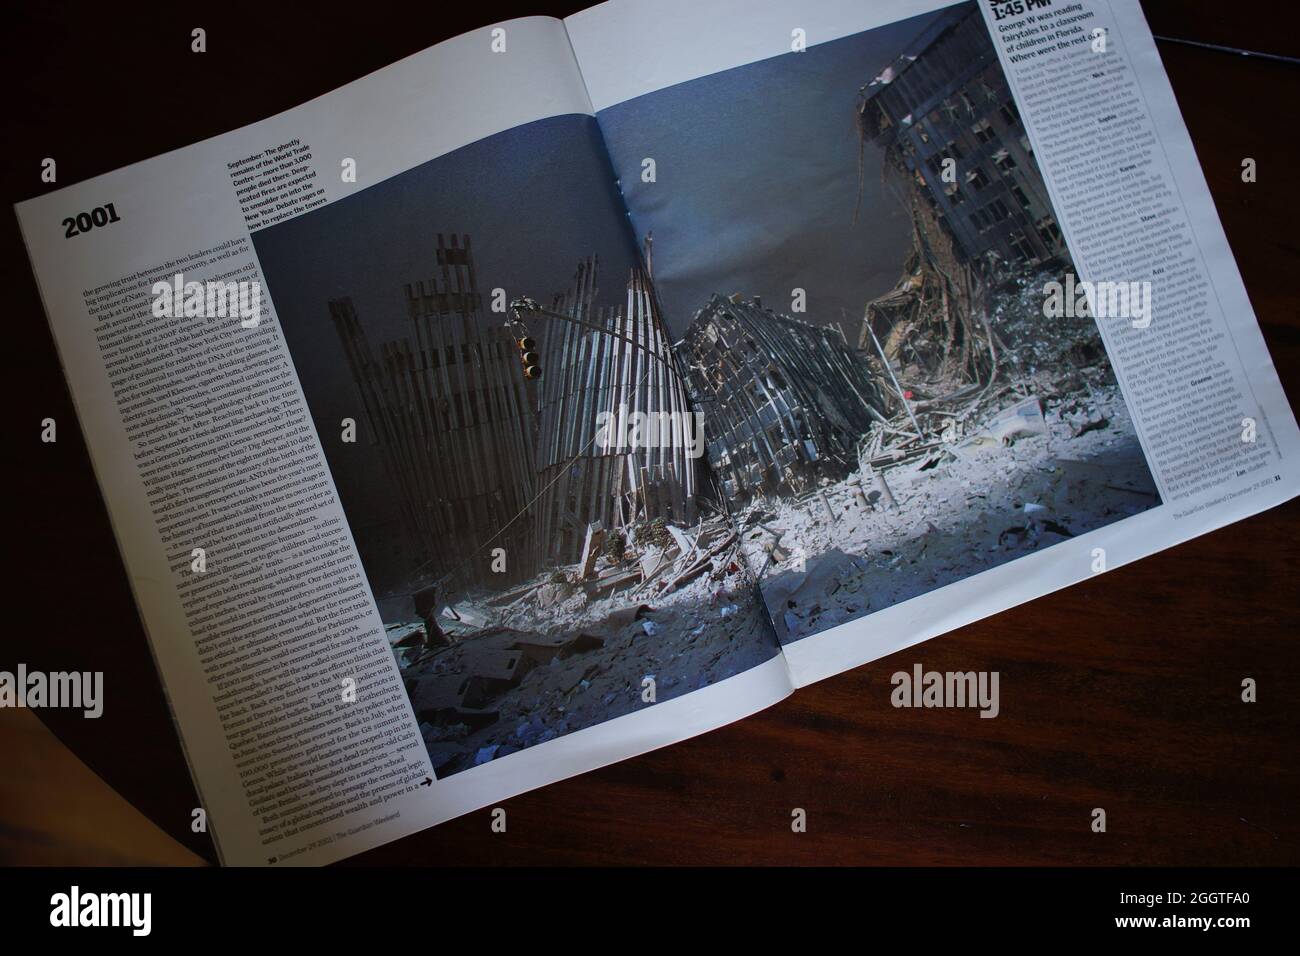 11 de septiembre de 2001 - artículo de la revista con foto que muestra los restos mortales del World Trade Center, Manhattan, Nueva York. Suplemento de fin de semana del periódico Guardian : 2001, El año en fotos con ensayo de Alan Rusbridger Foto de stock